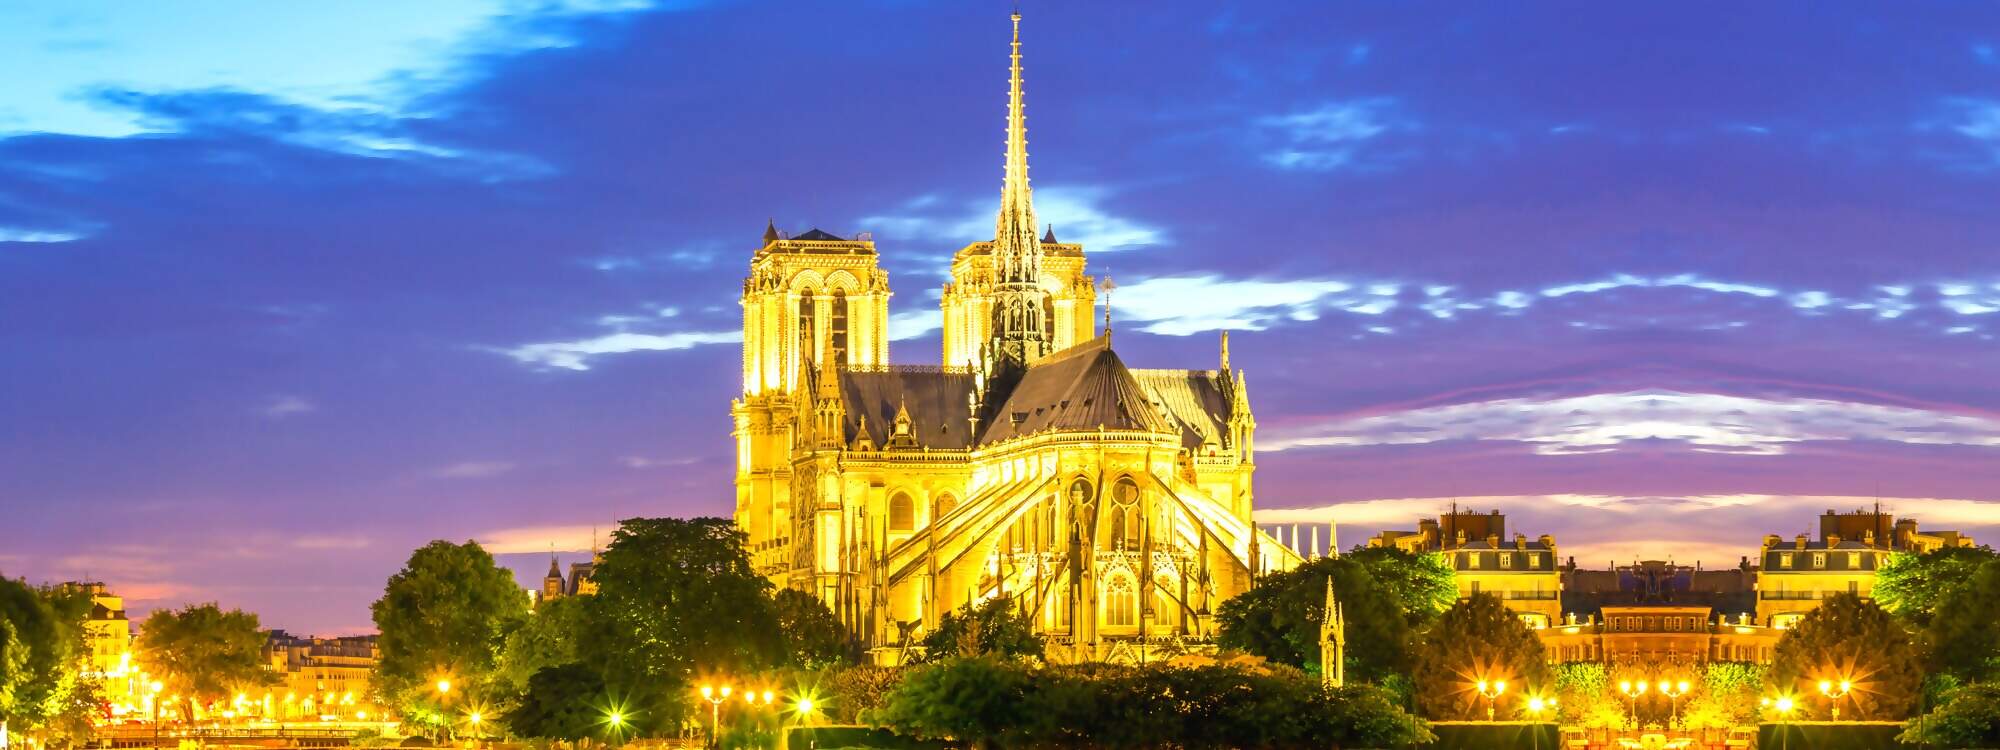 Die Kathedrale Notre Dame in Paris - Frankreich